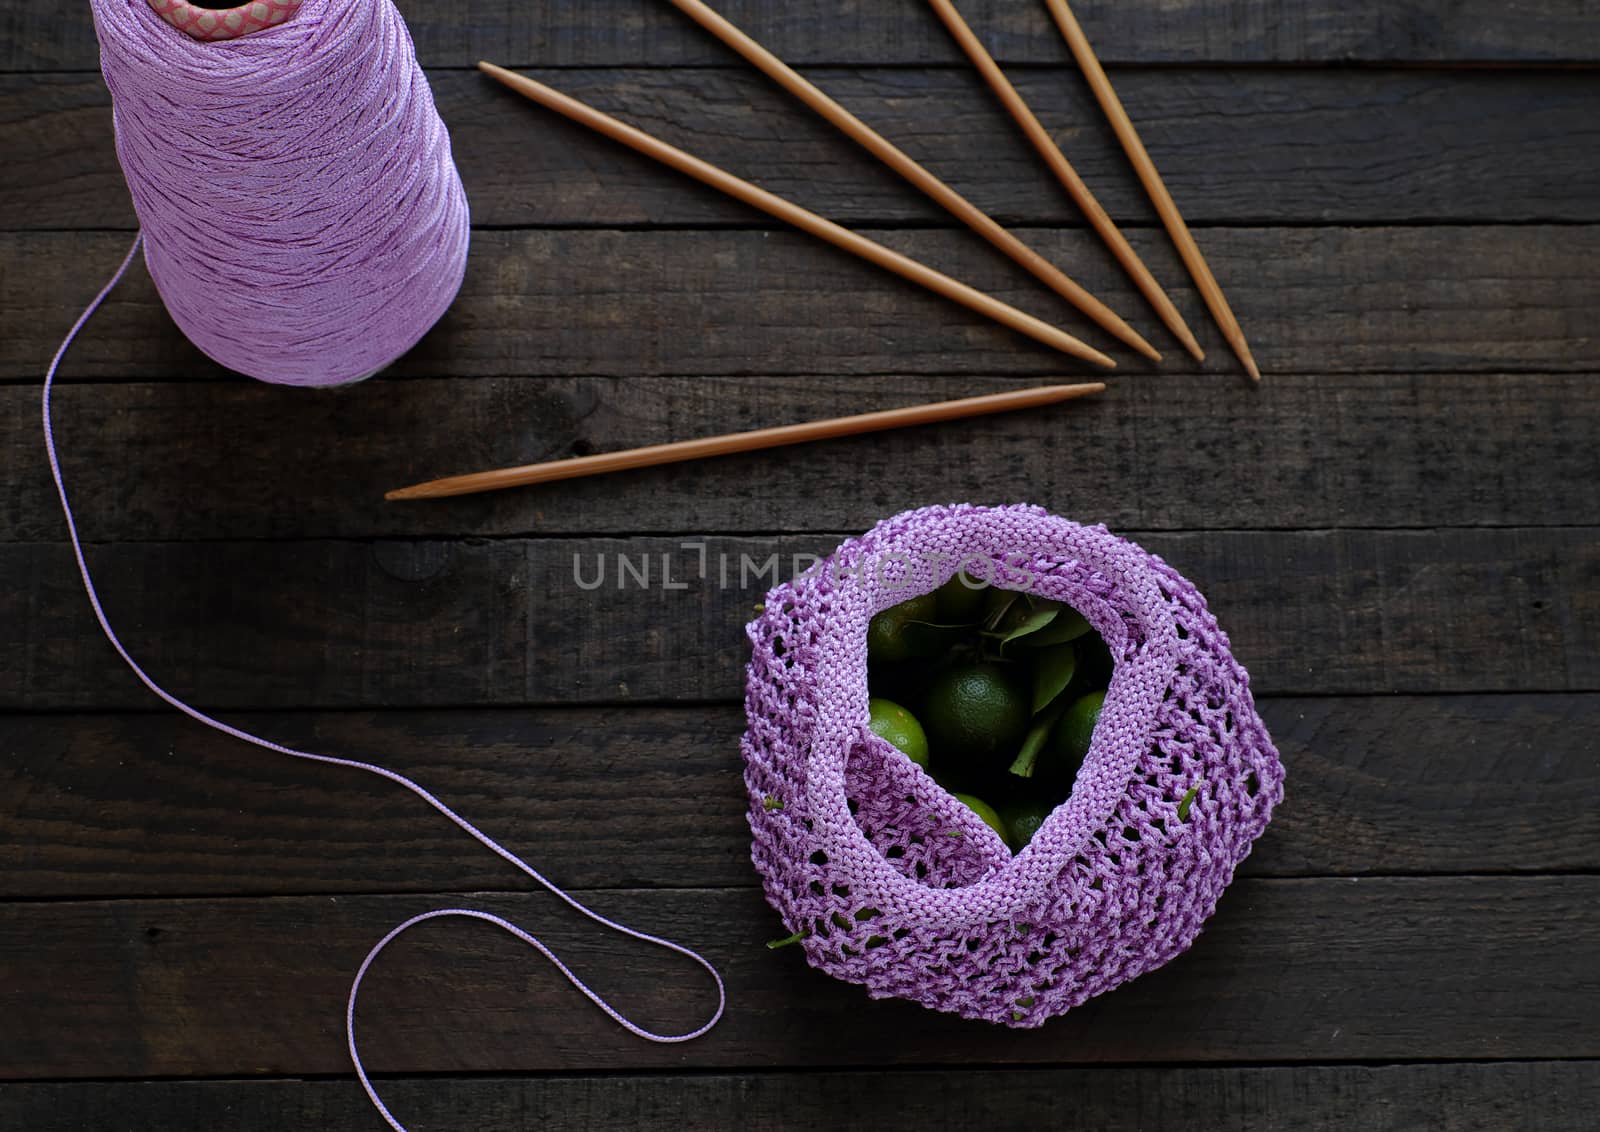 knit handmade handbag by xuanhuongho